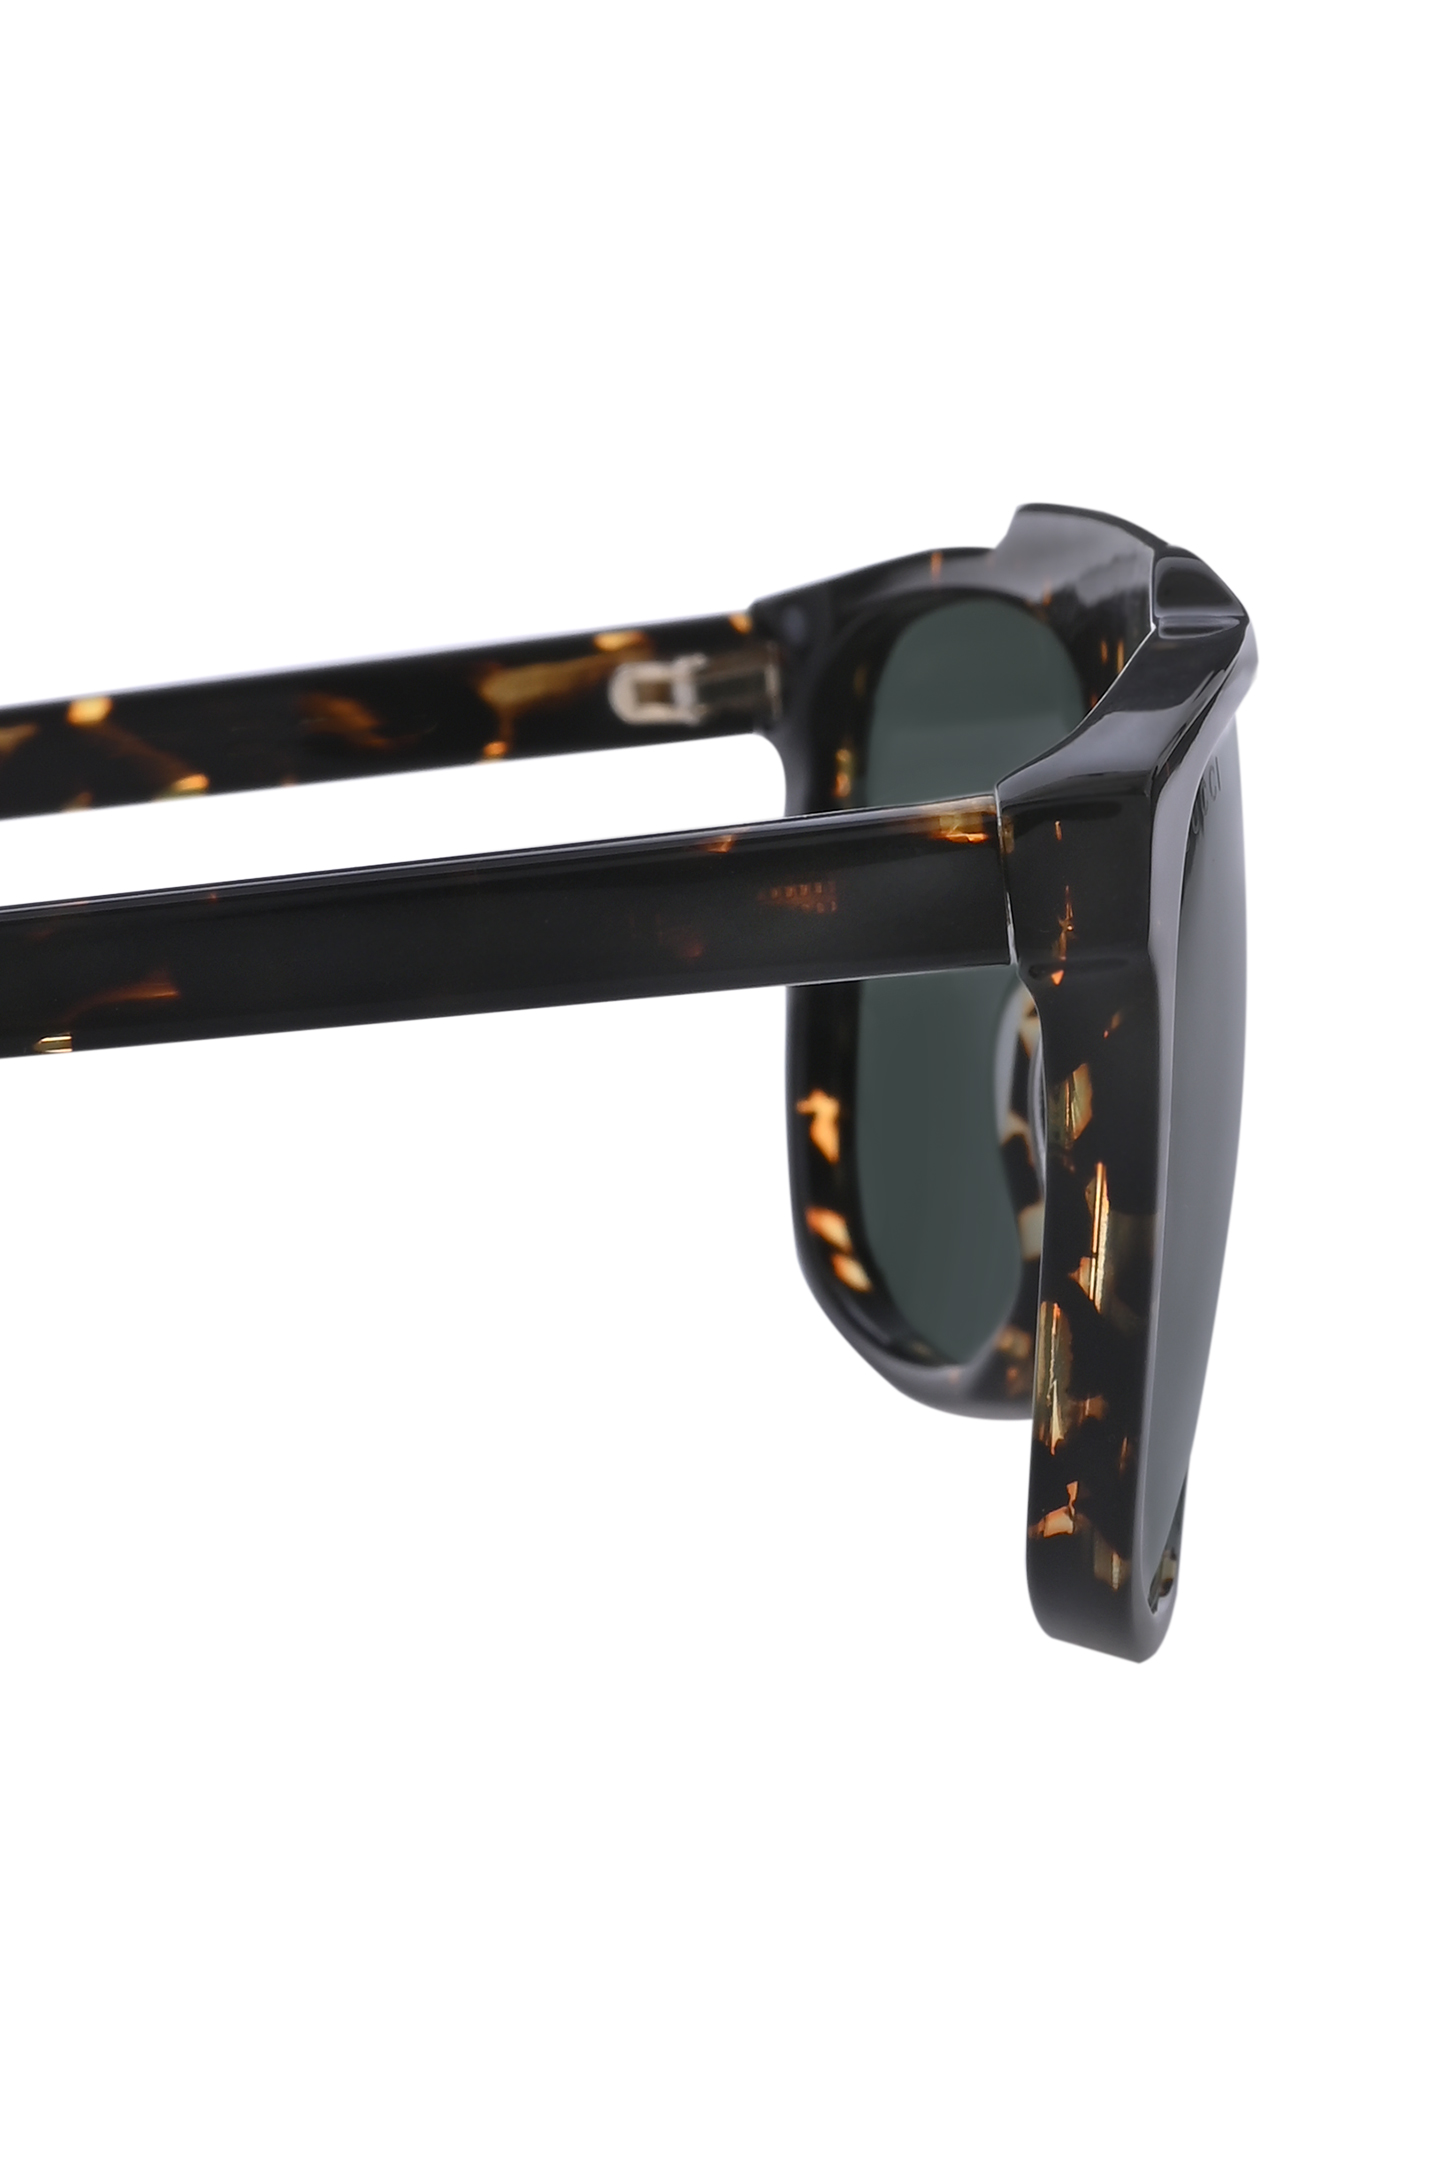 Солнцезащитные очки GUCCI 681218 J0740, цвет: Коричневый, Unisex